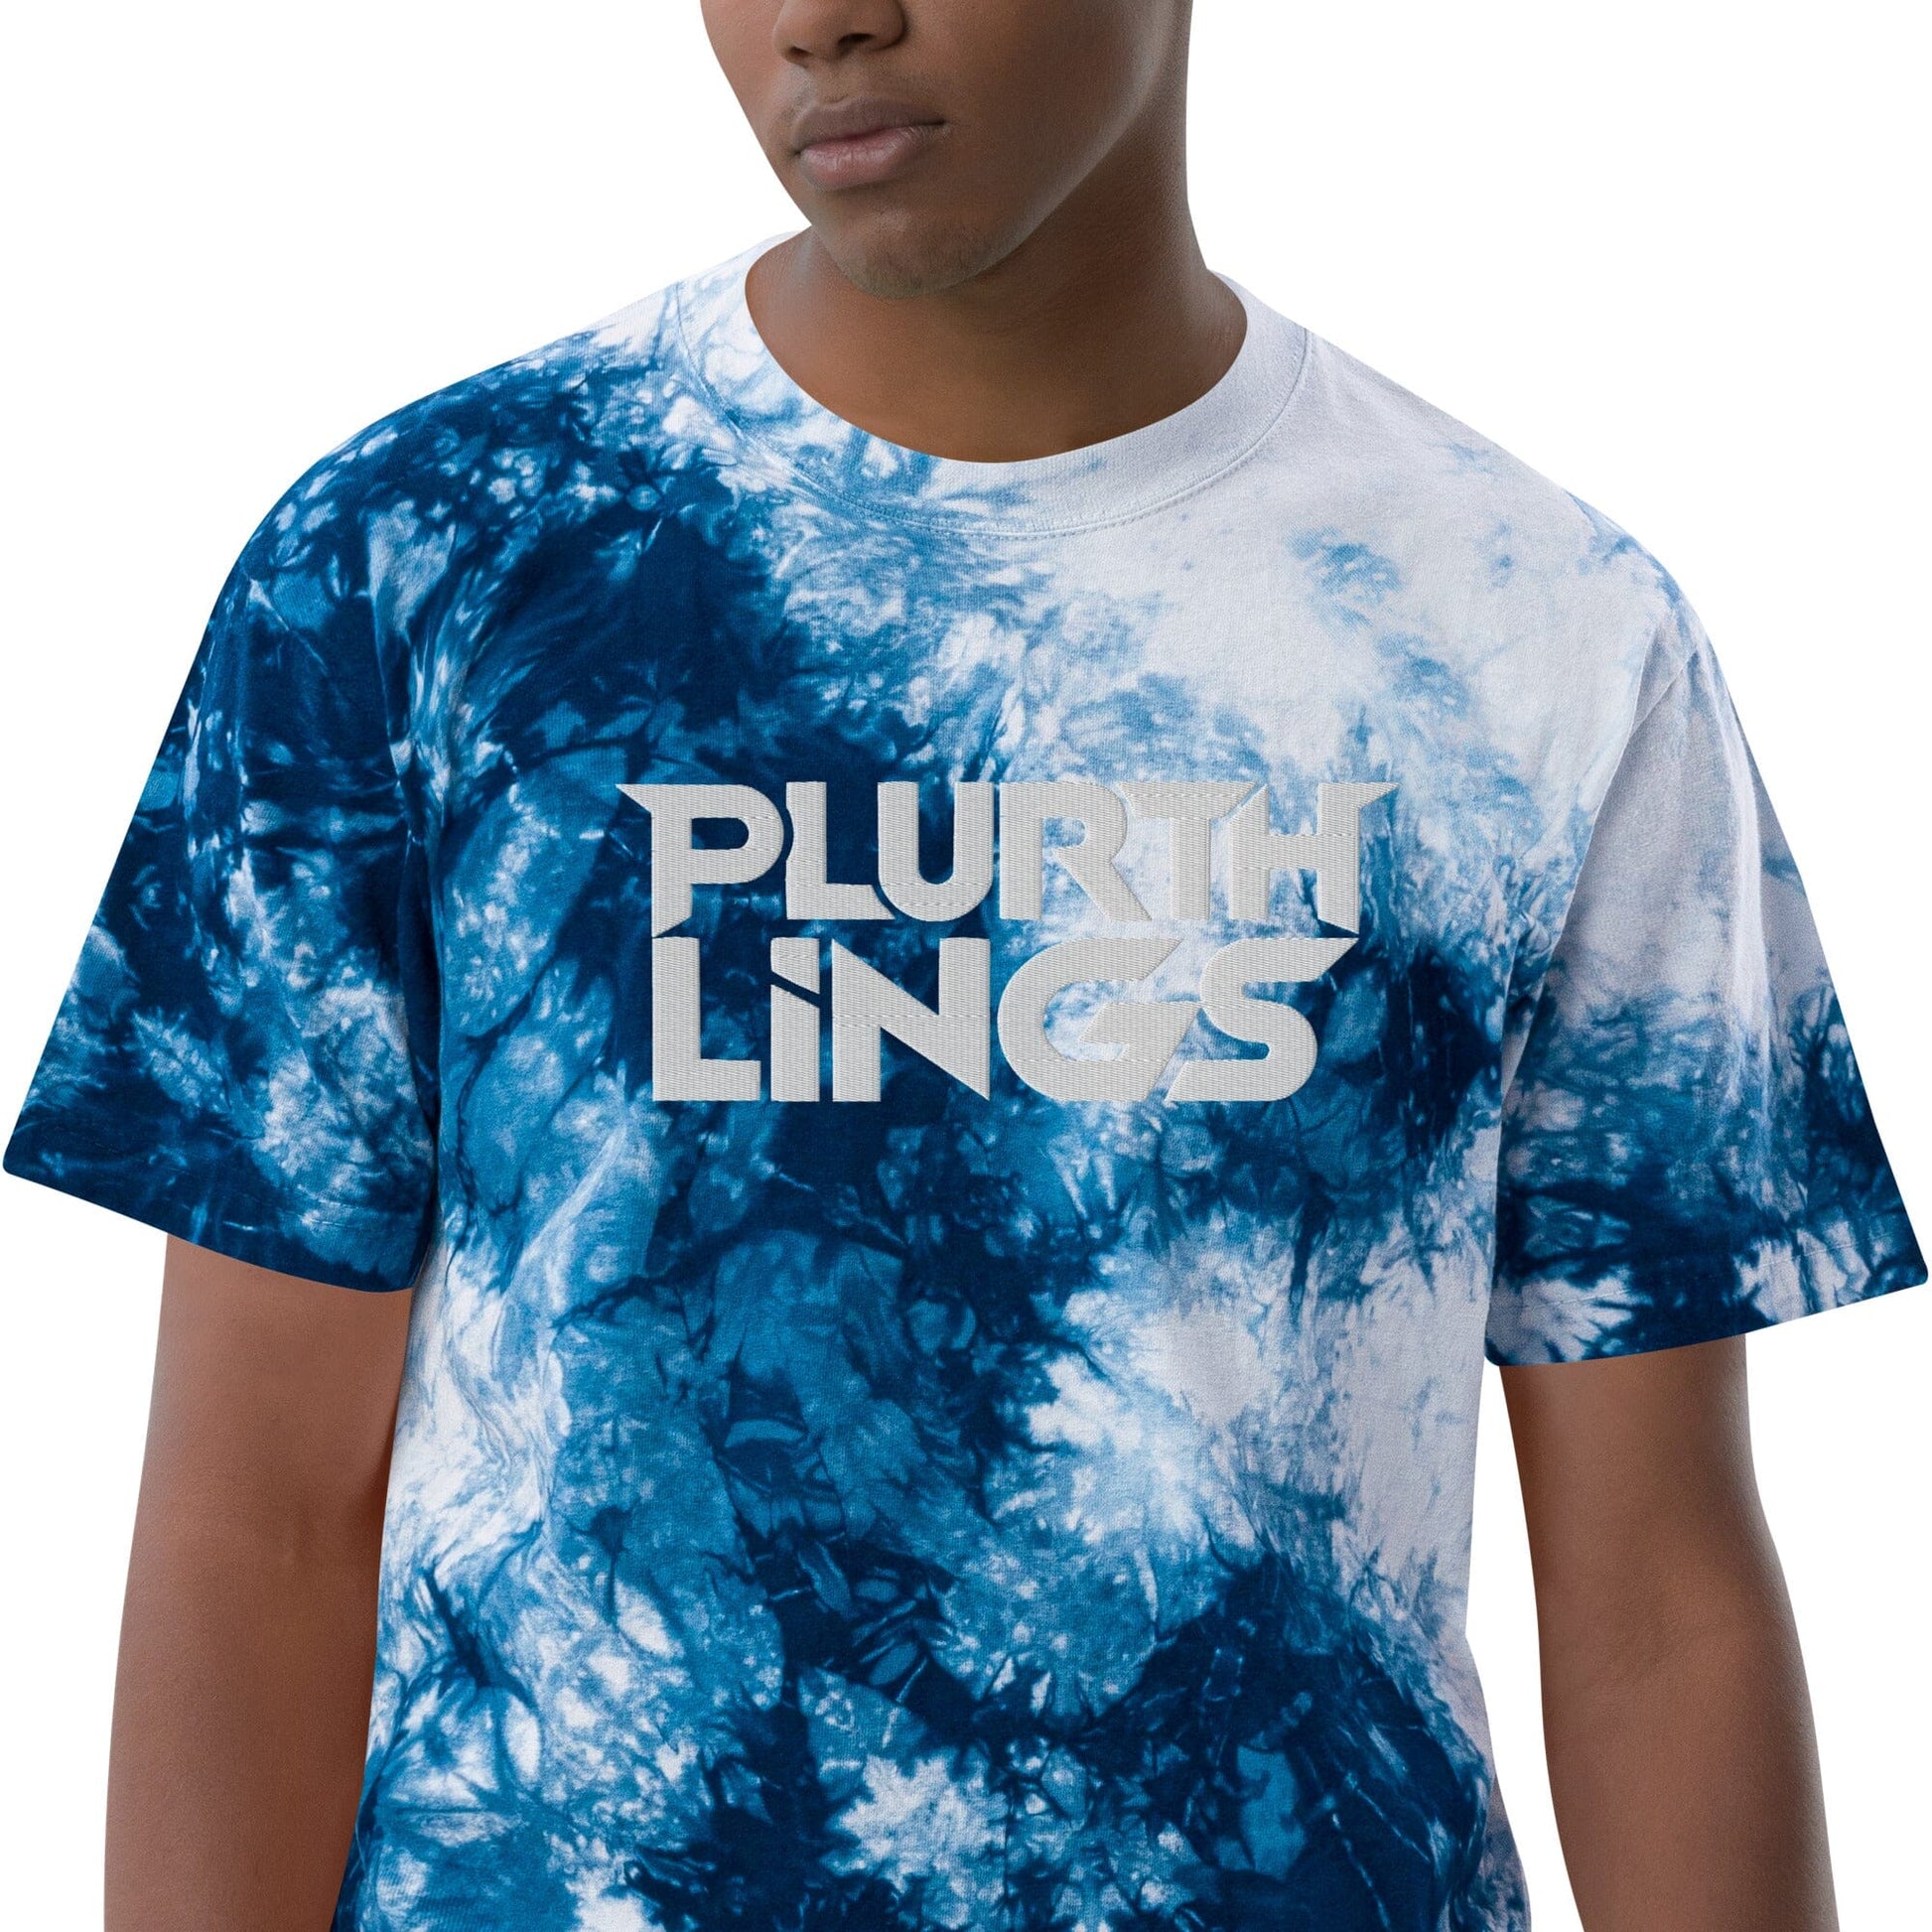 Plurthlings Oversized Tie-Dye T-Shirt PLURTHLINGS Navy / White S 